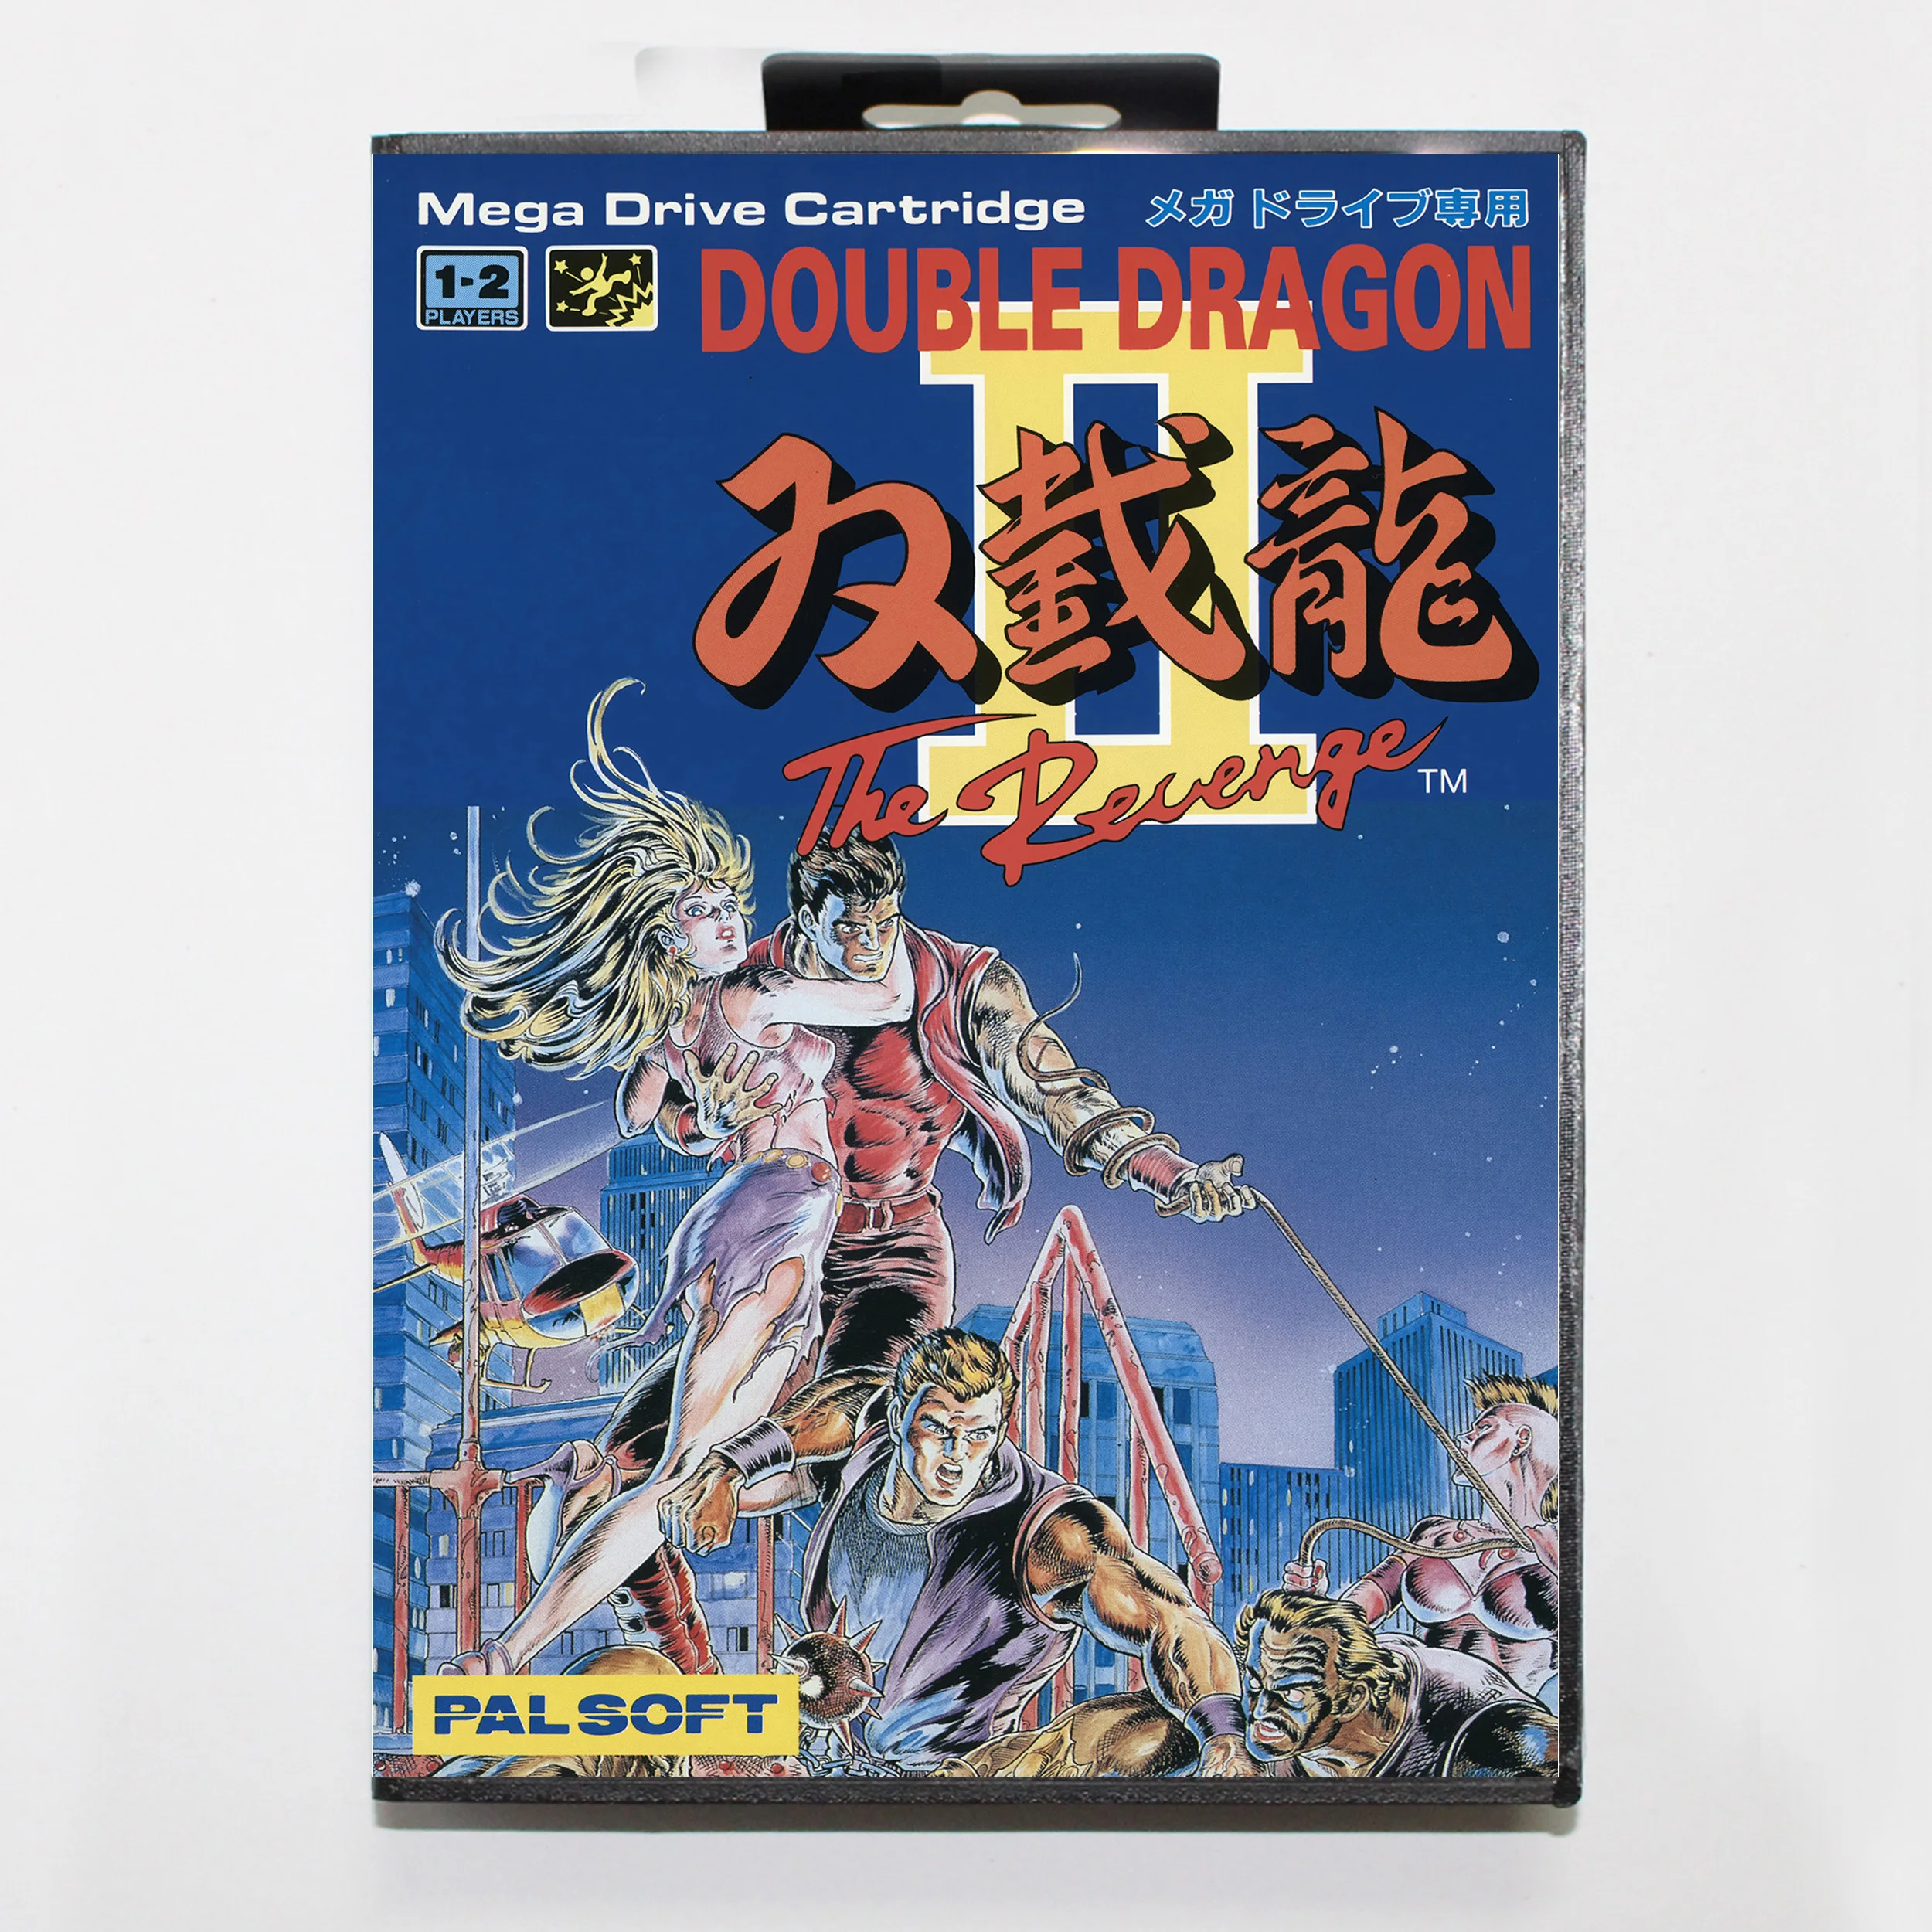 

Двойная игровая карта Dragon 2 16 бит MD для Sega Mega Drive/ Genesis с крышкой JP Розничная коробка